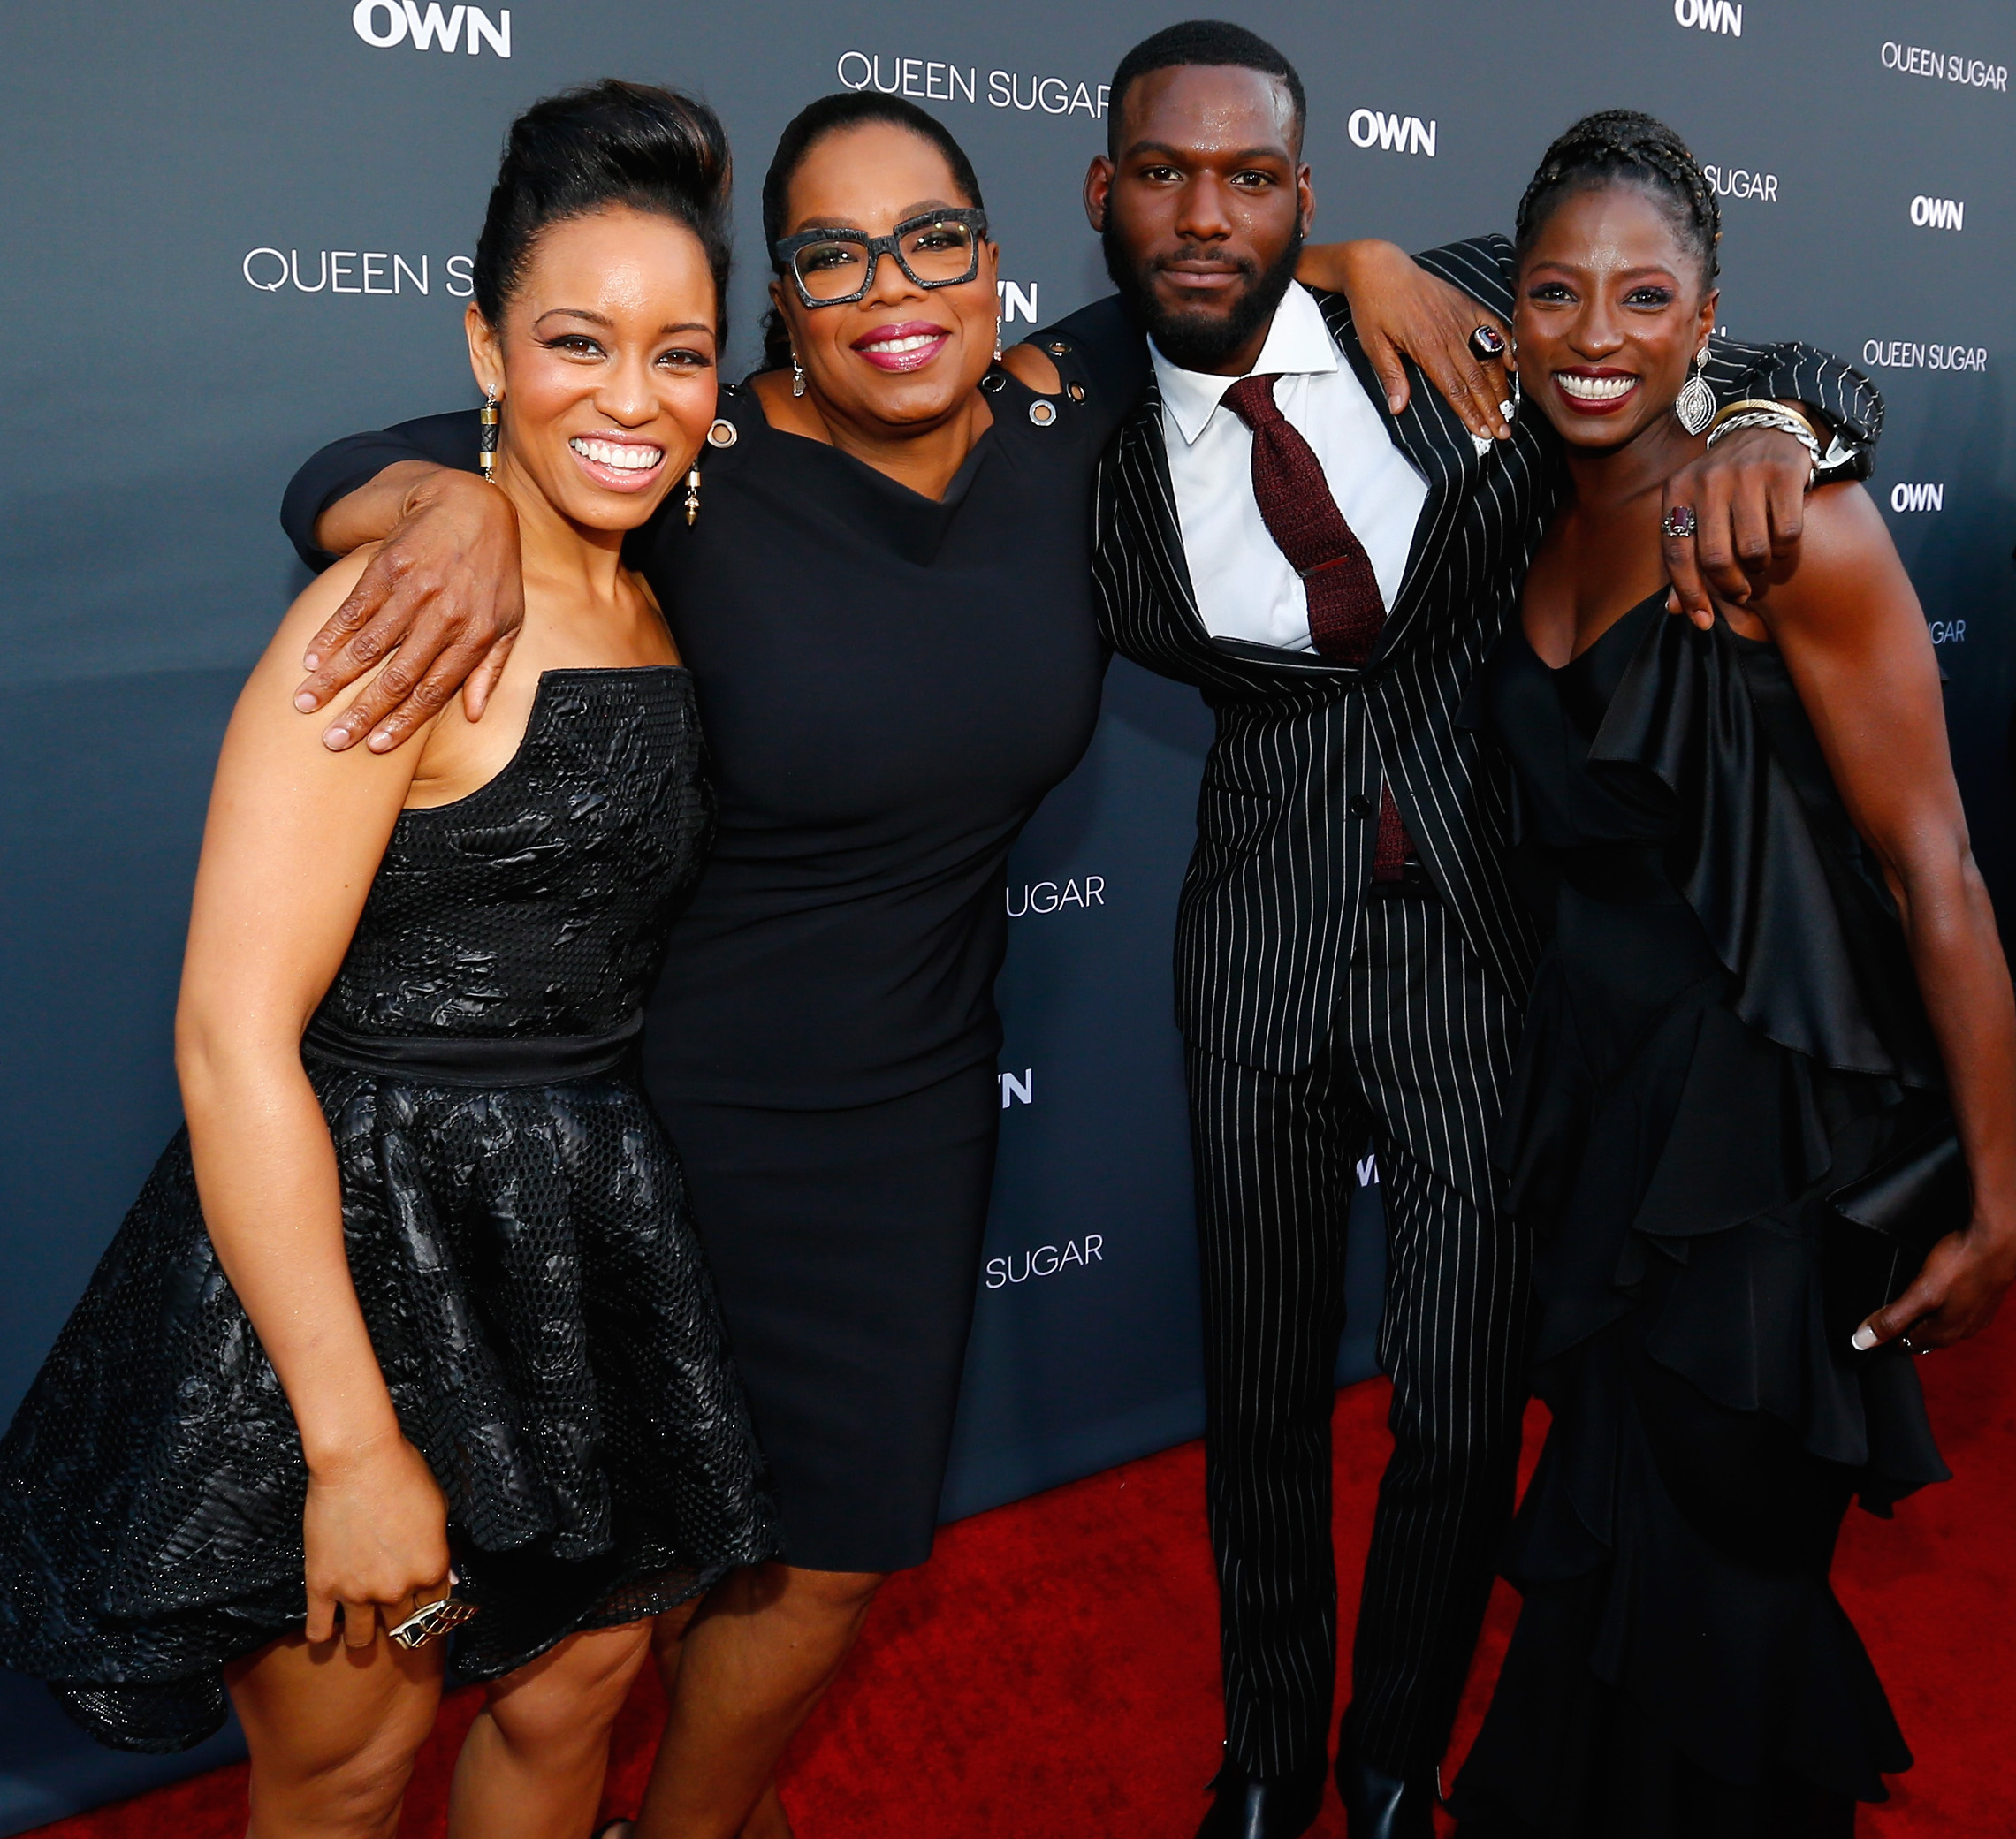 OWN: Oprah Winfrey Network Celebrates "Queen Sugar" Premiere